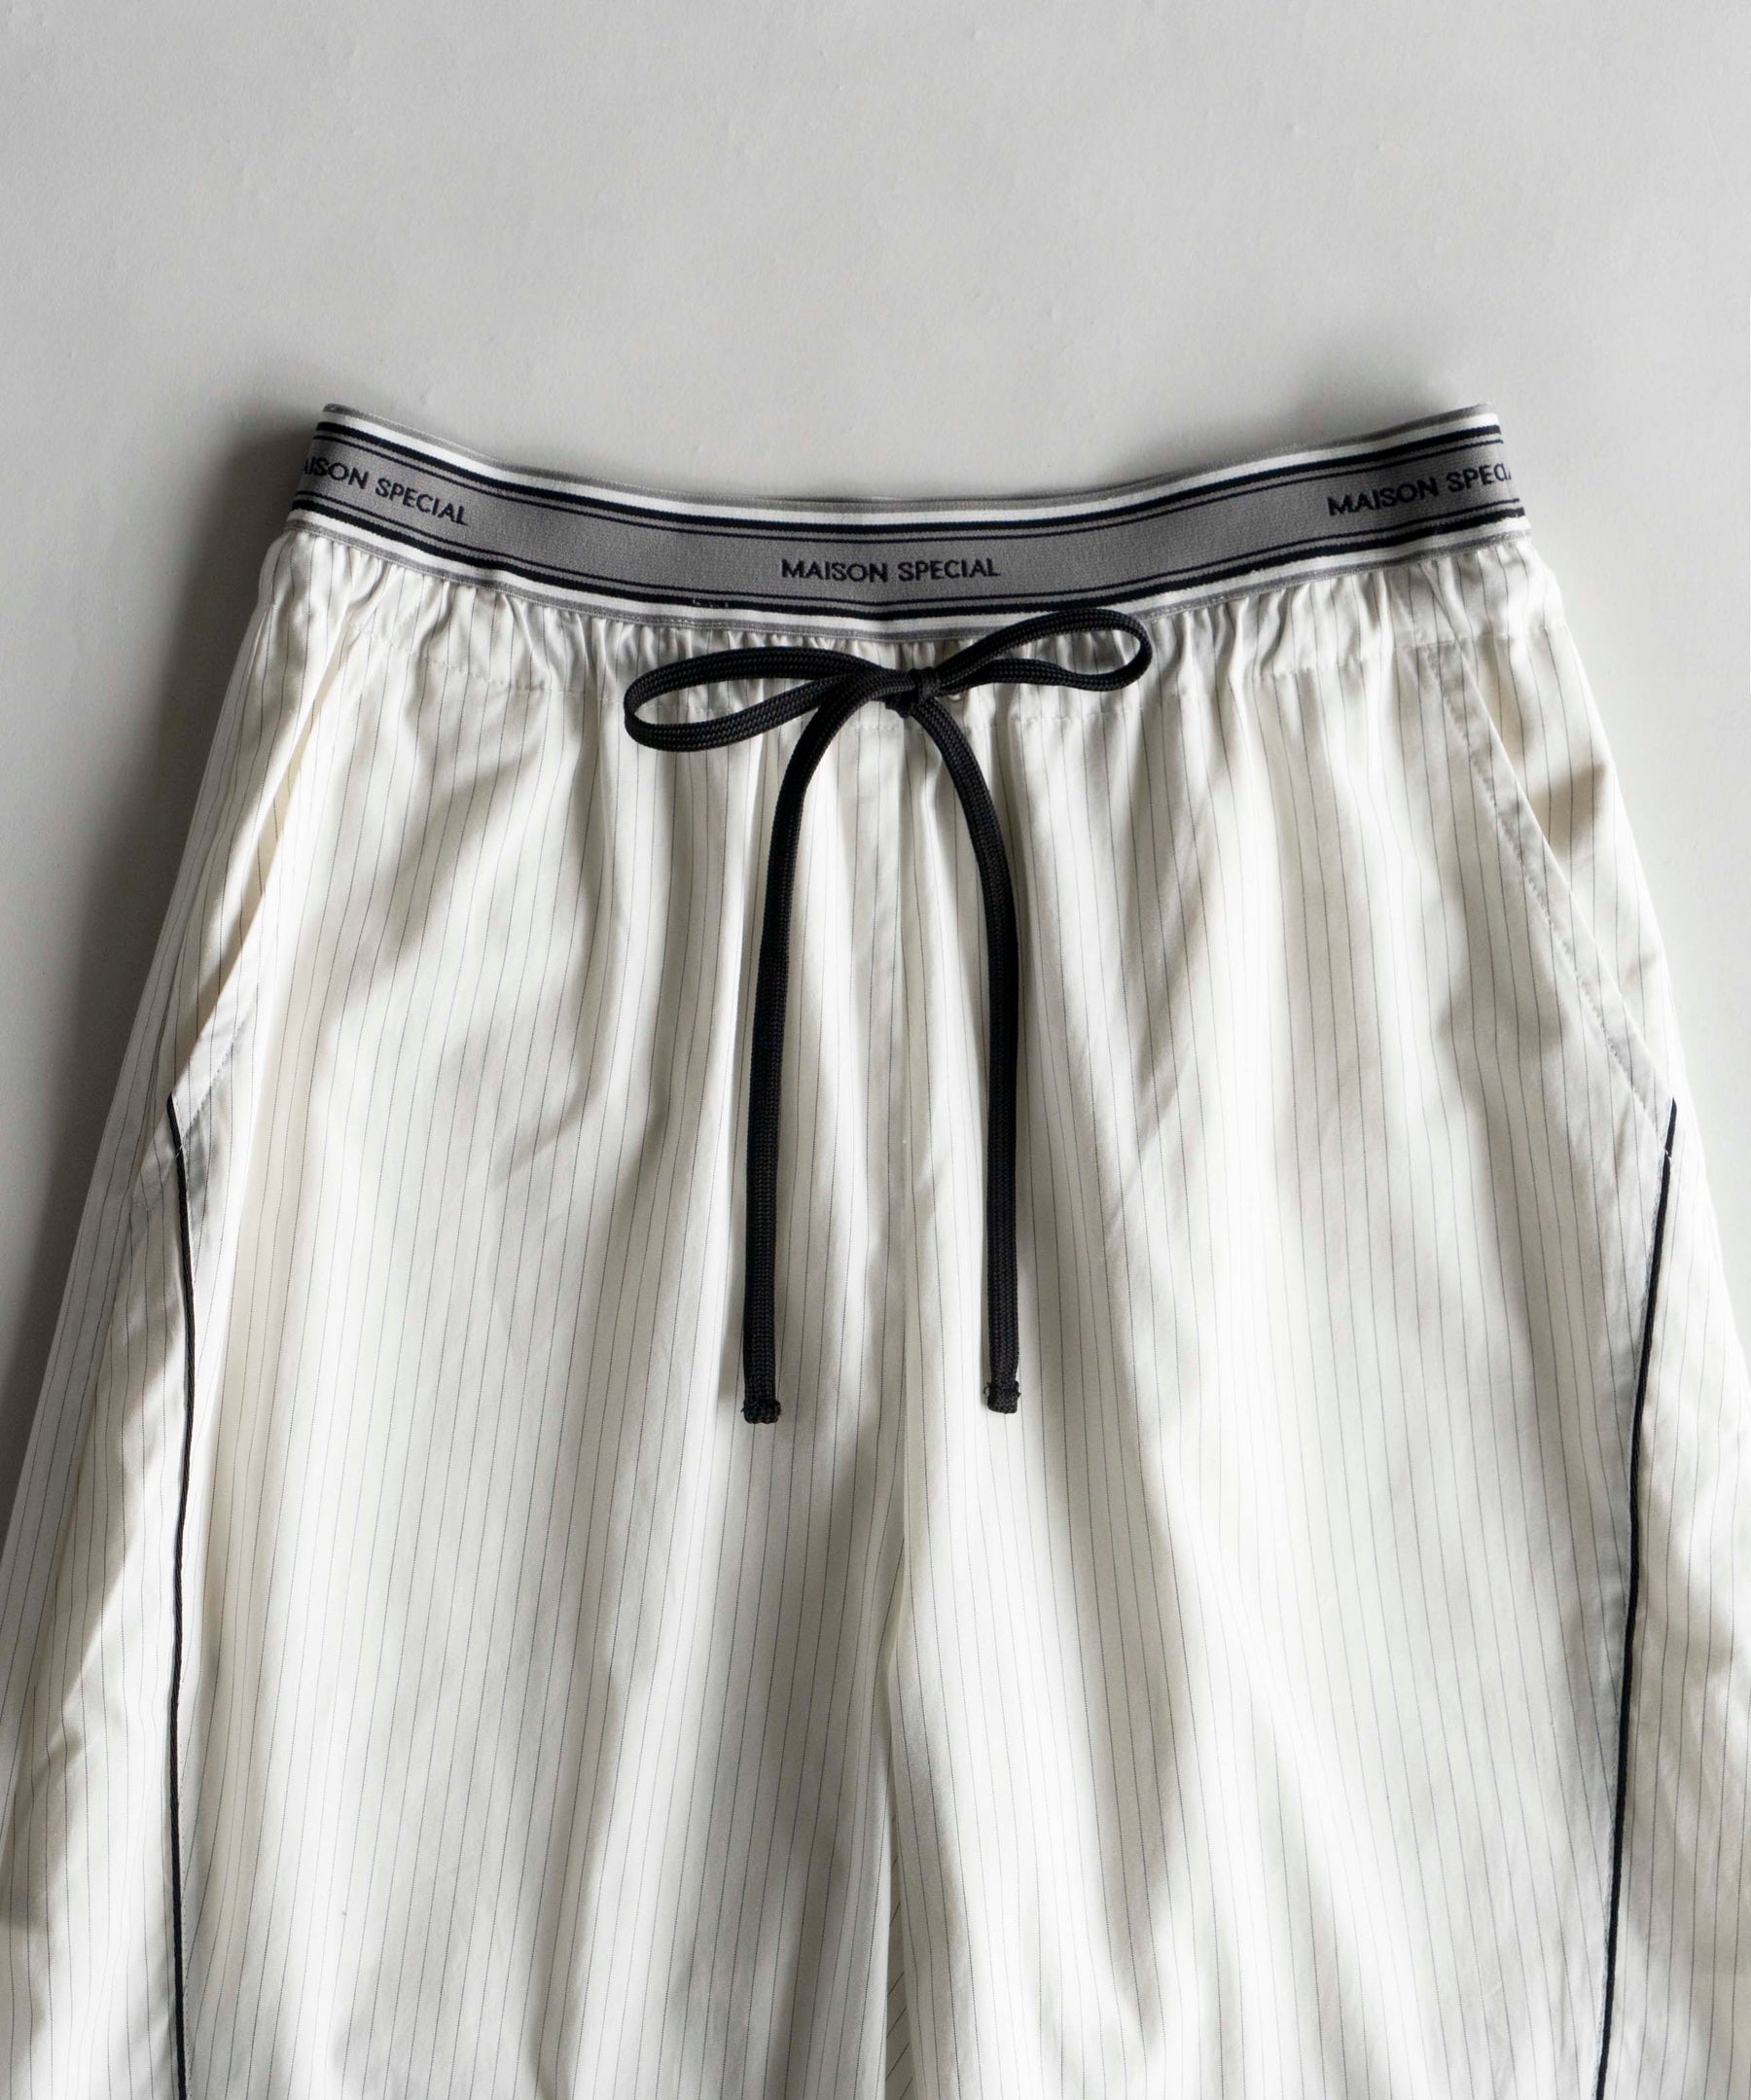 【SALE】Jacquard Belt Wide Pants